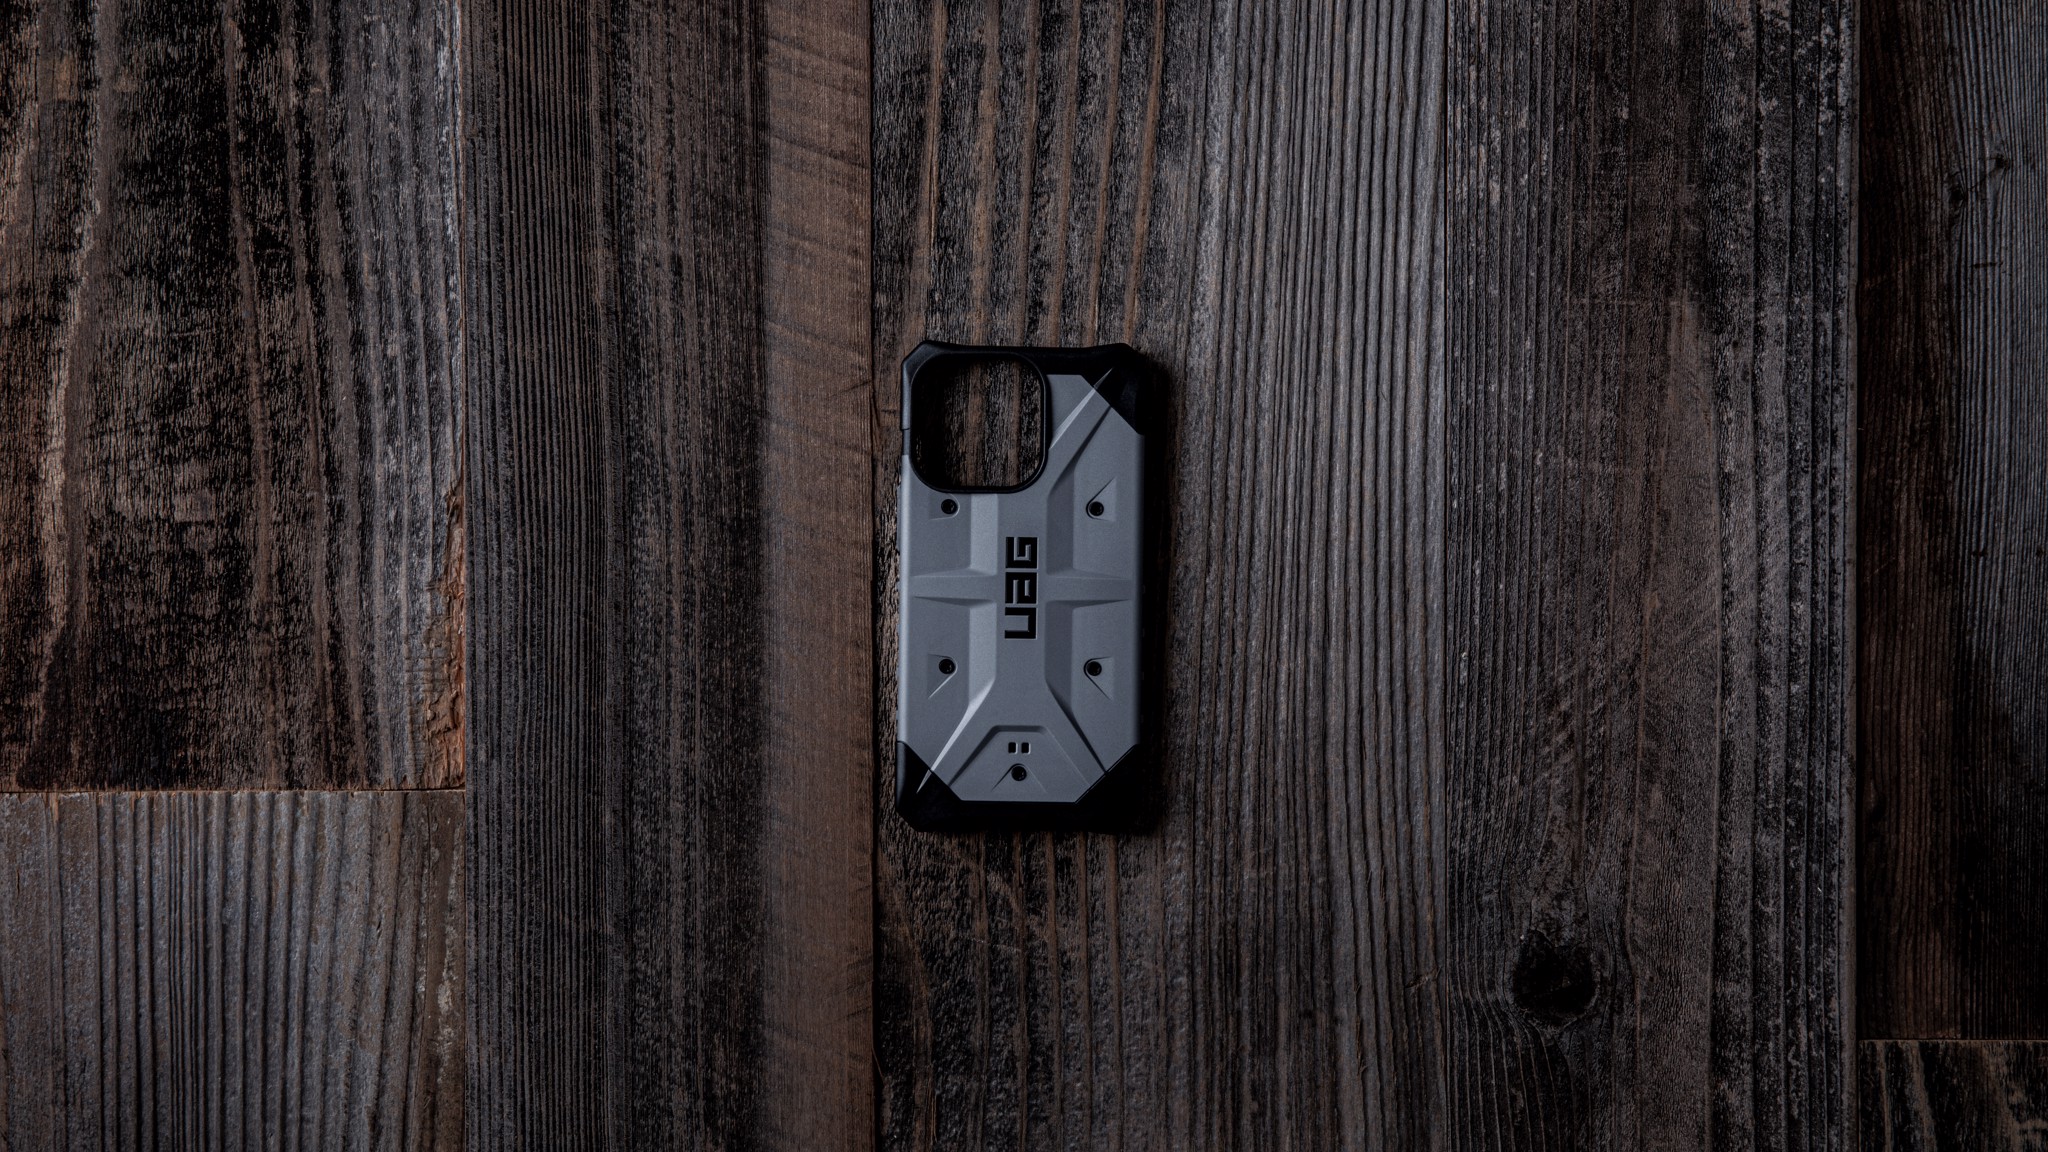 Bảo vệ điện thoại của bạn với Ốp lưng UAG Pathfinder chính hãng cho iPhone 12 Pro Max. Với thiết kế vững chắc, bảo vệ tốt và hiệu suất cao, chiếc Ốp lưng này là lựa chọn hoàn hảo cho những ai yêu thích sự năng động và sang trọng.